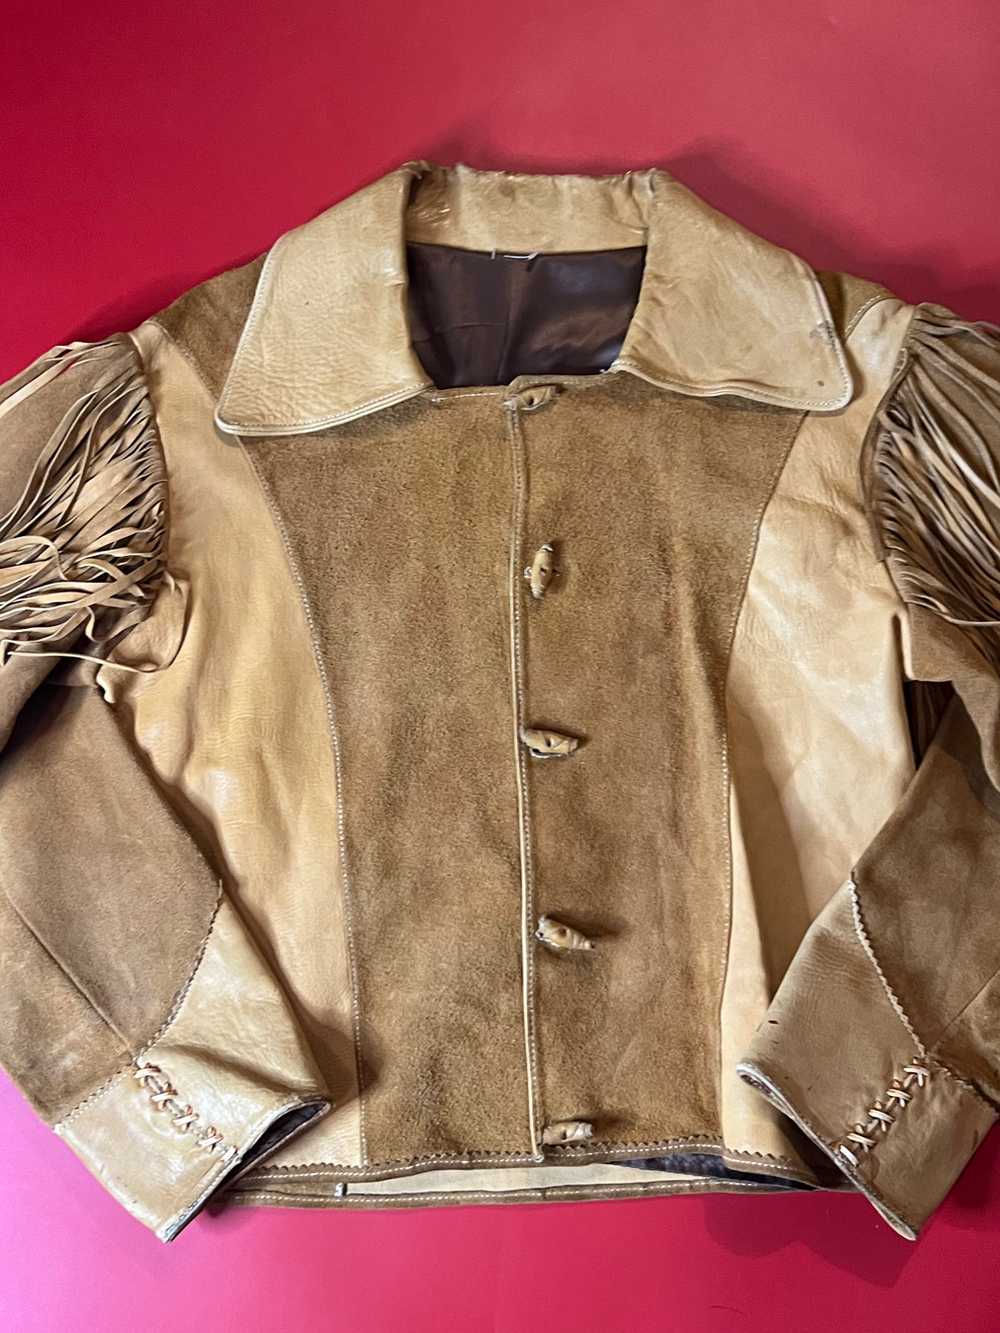 70’s Fringed Leather Jacket - image 2